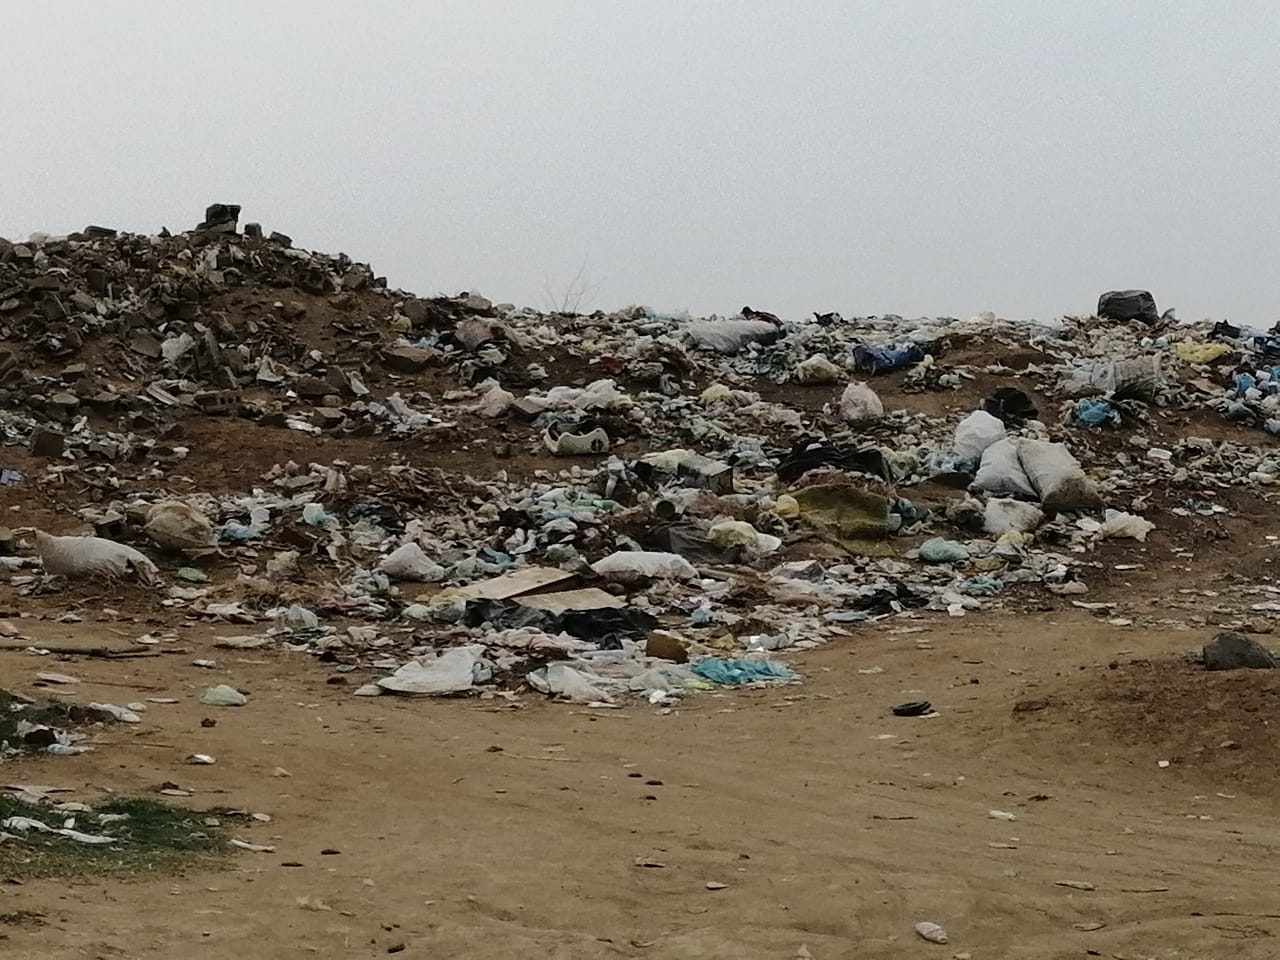 قرية أبو حجر بصامطة تخنقها النفايات وبدون أعمدة إنارة أو مياه ومقابرها مفتوحة!